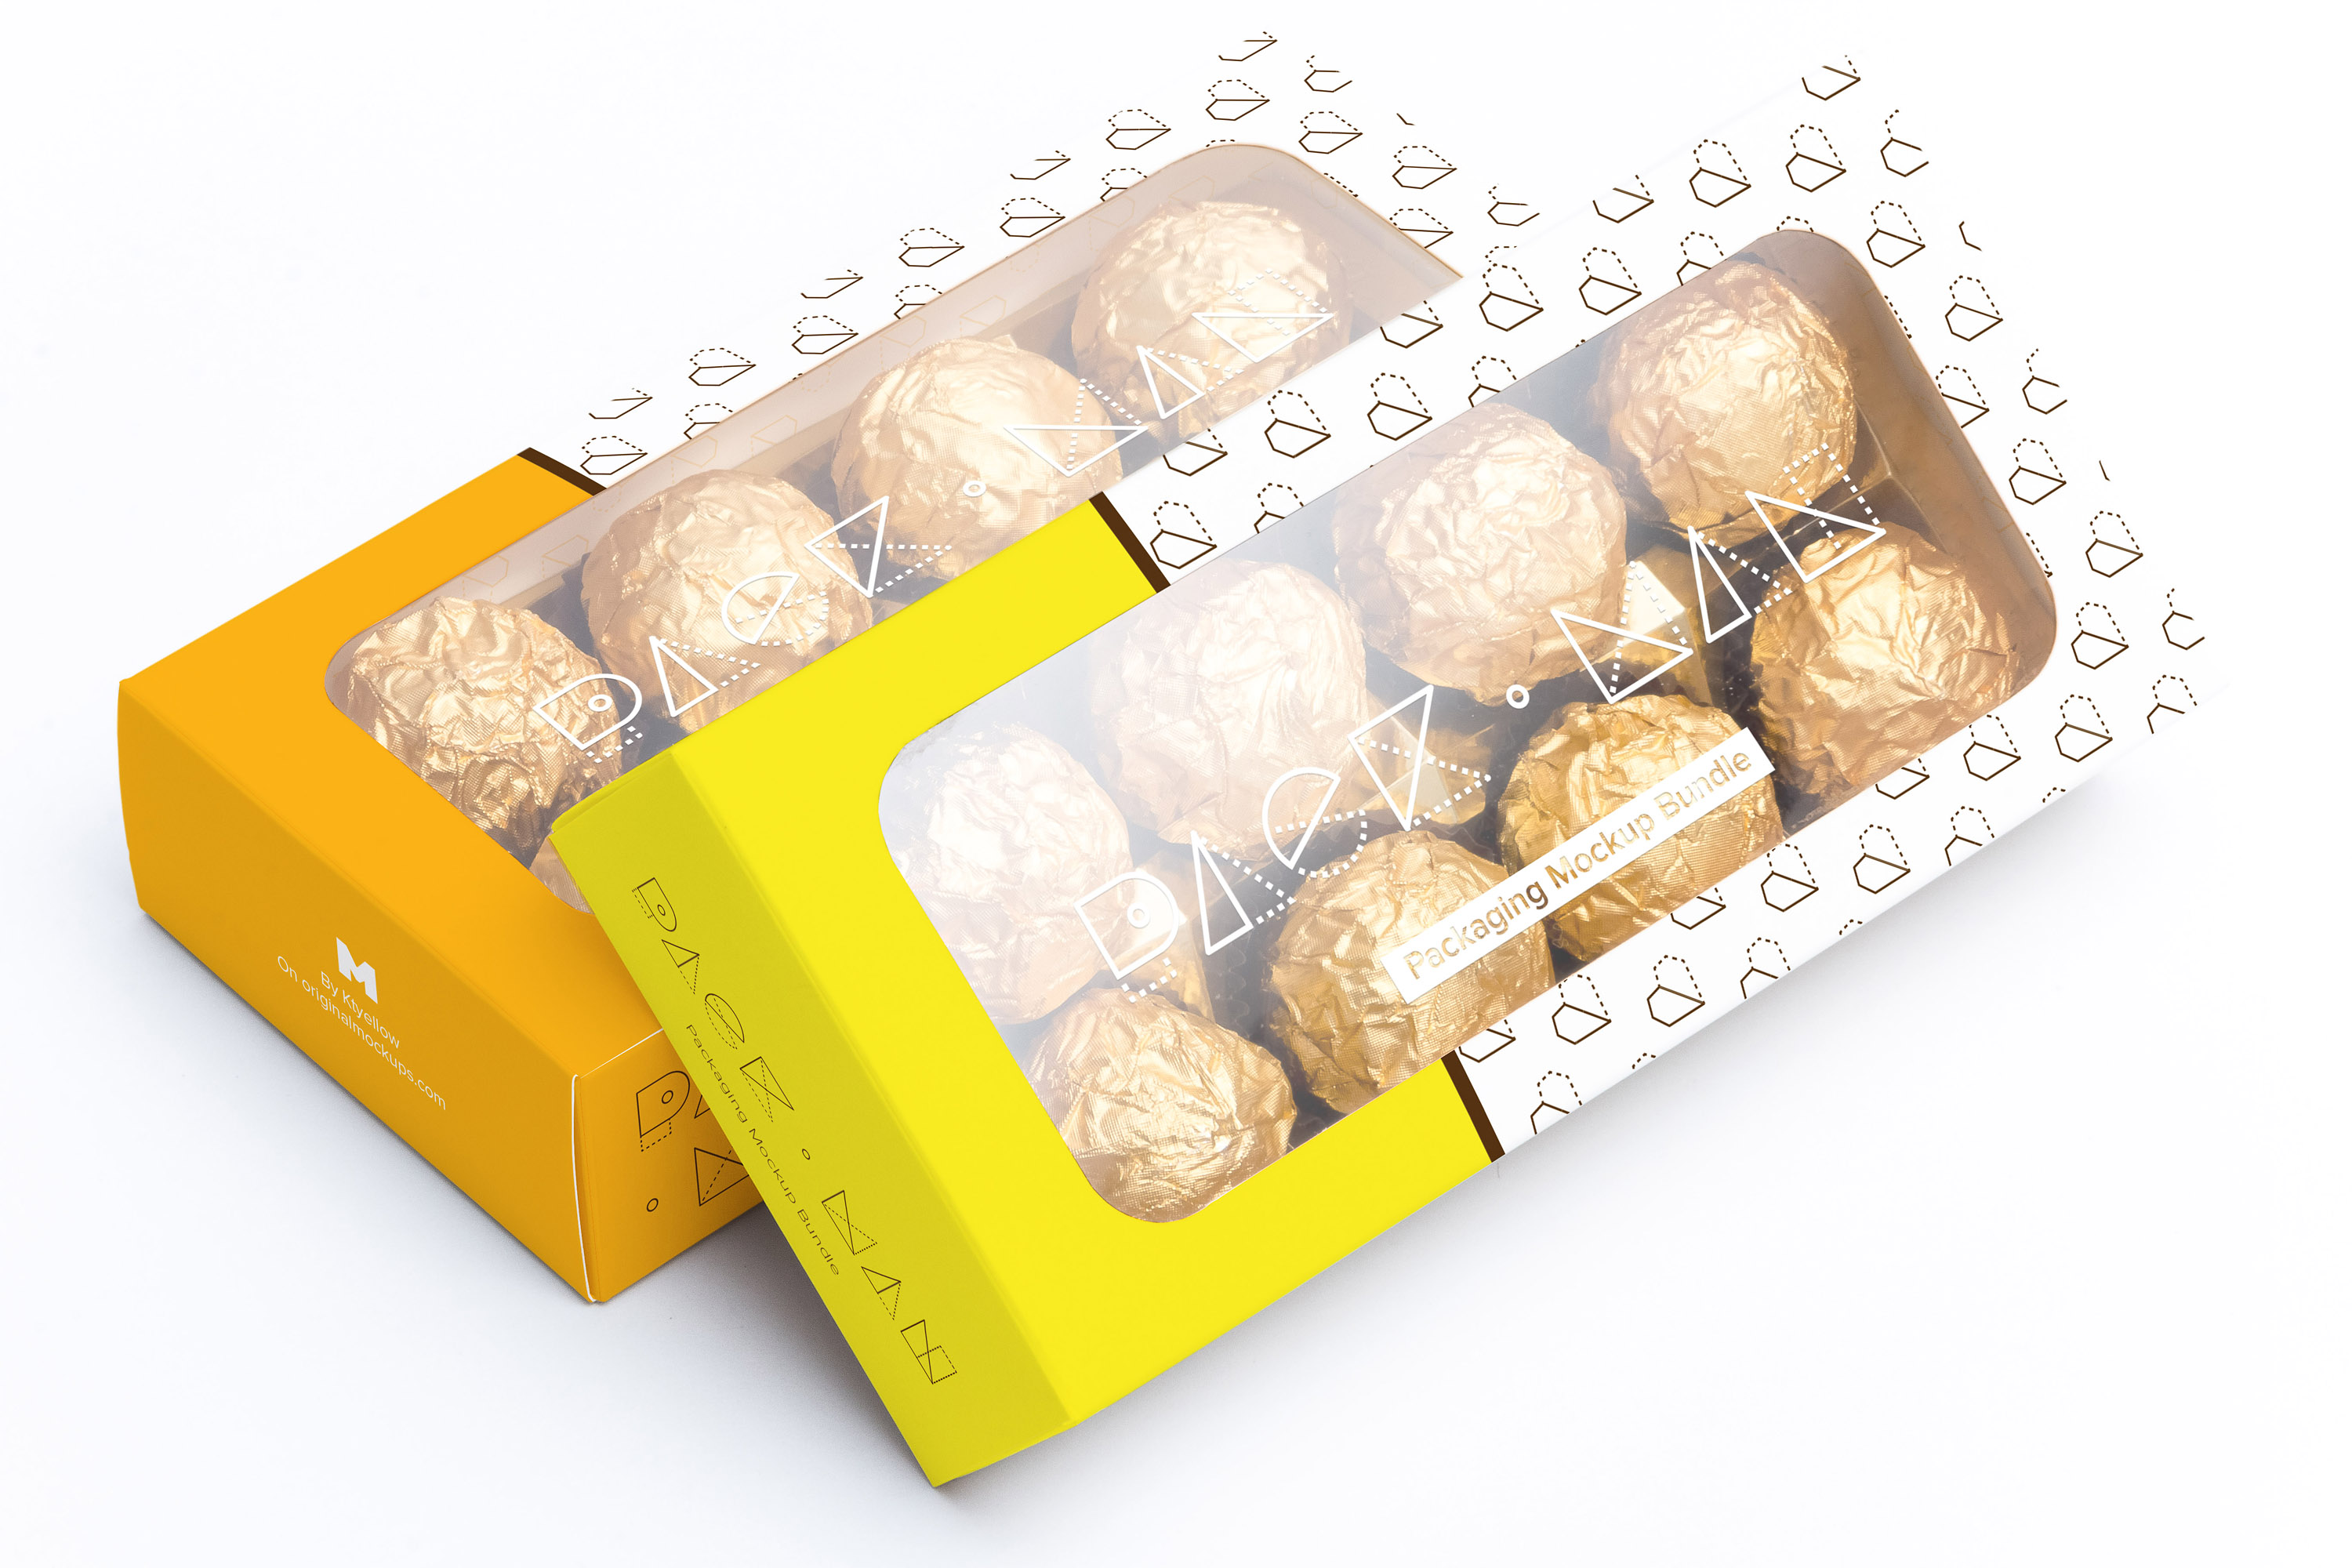 巧克力甜点包装盒外观设计样机07 Sweet Box Mockup 07插图